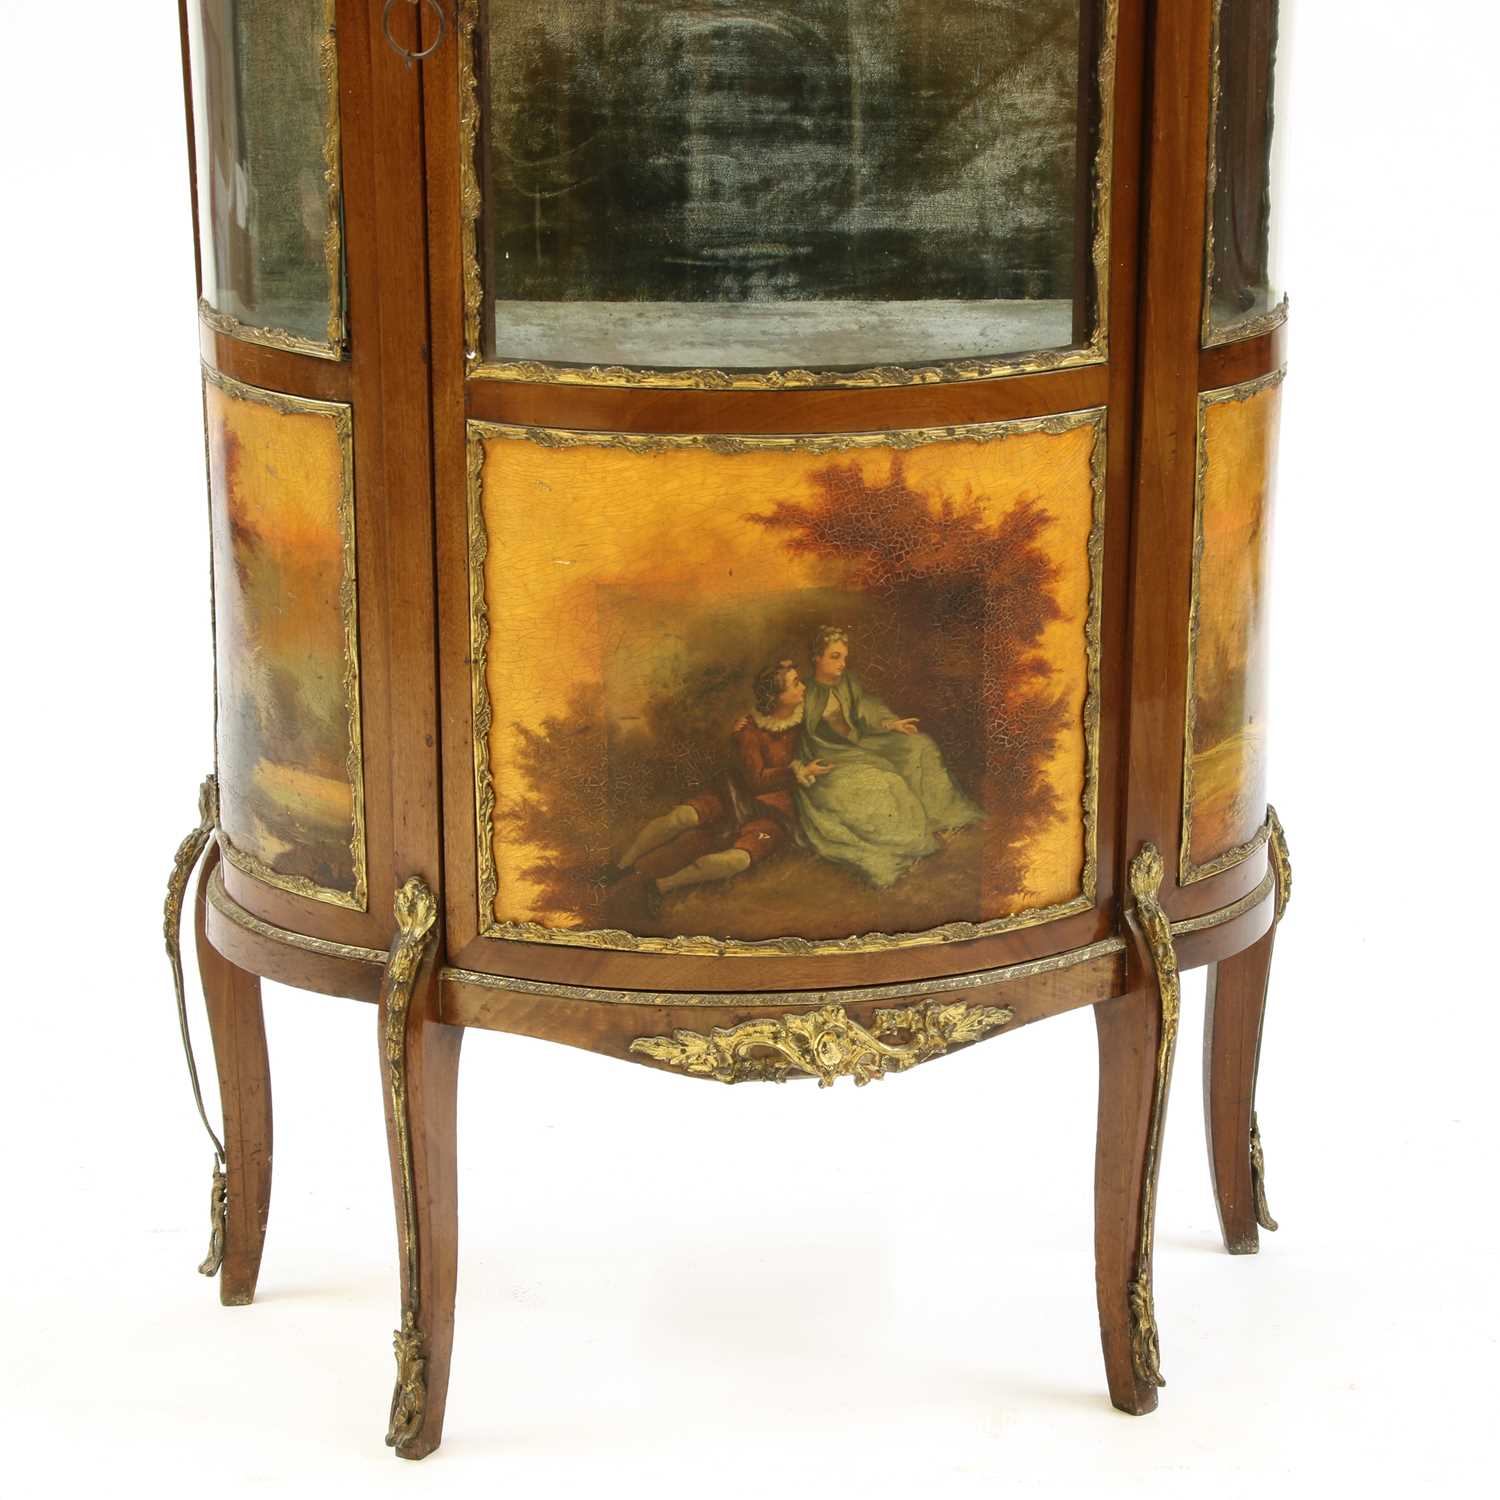 A French Louis XV style mahogany vitrine - Image 2 of 2